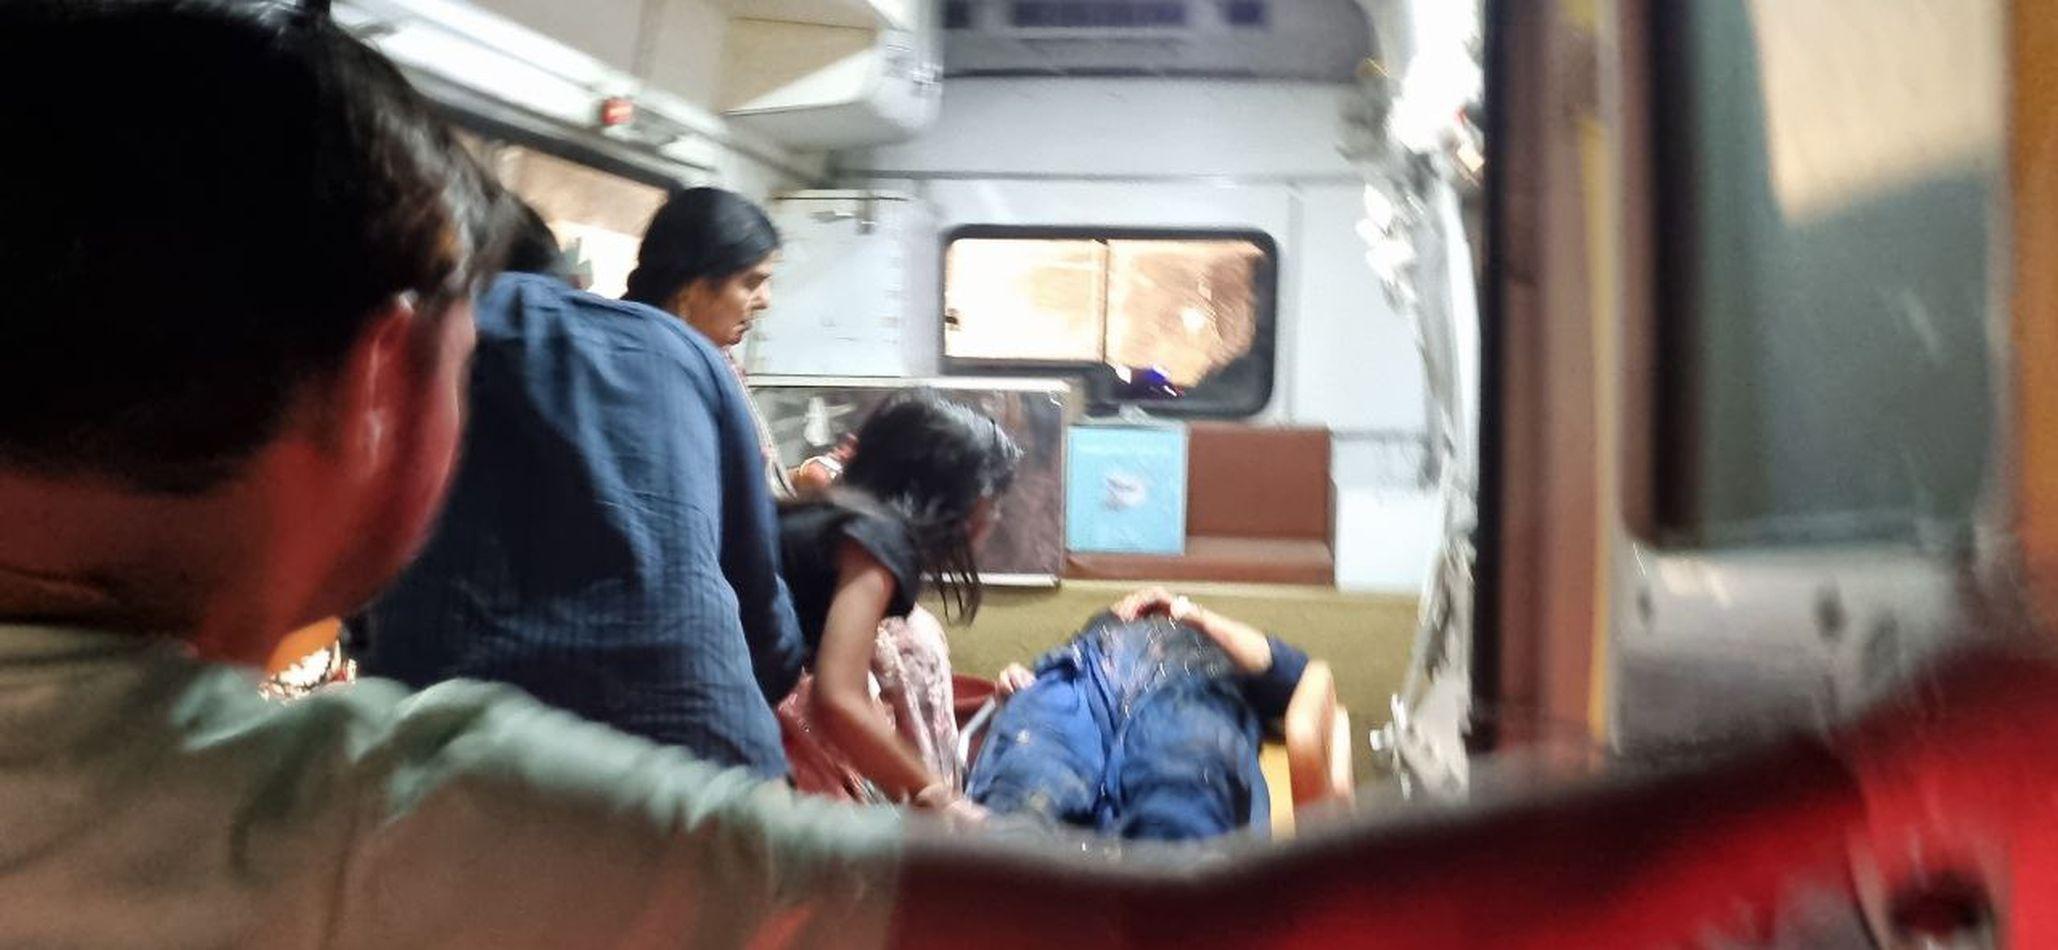 ऐलनाबाद से हनुमानगढ़ आ रहा परिवार हुआ हादसे का शिकार । खड़ी ट्रॉली में पीछे से टकराई कार, मां-बेटी की मौके पर मौत, चार घायल। मेहरवाला के पास ऐलनाबाद-शेरगढ़ मार्ग पर हुई दुर्घटना।